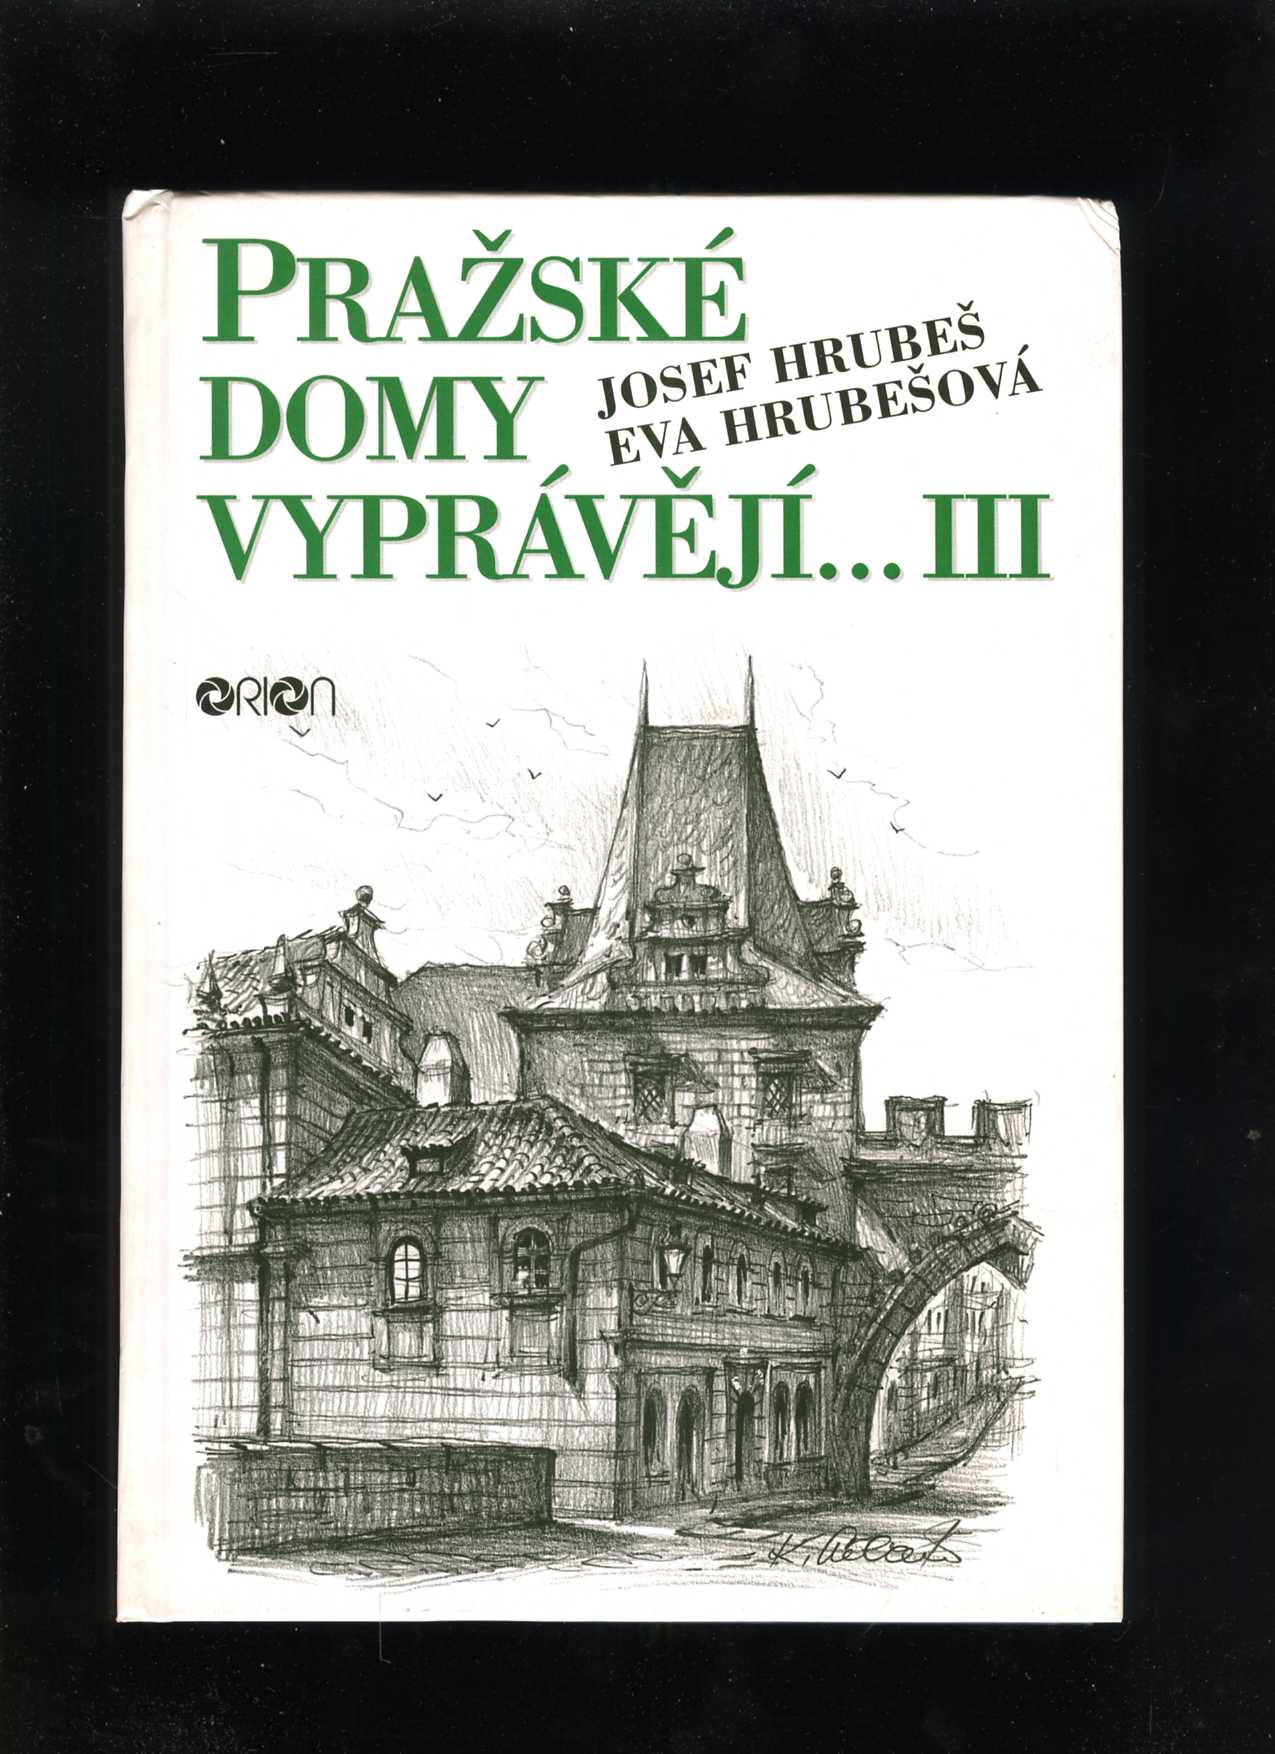 Pražské domy vyprávějí... III. (Josef Hrubeš, Eva Hrubešová)